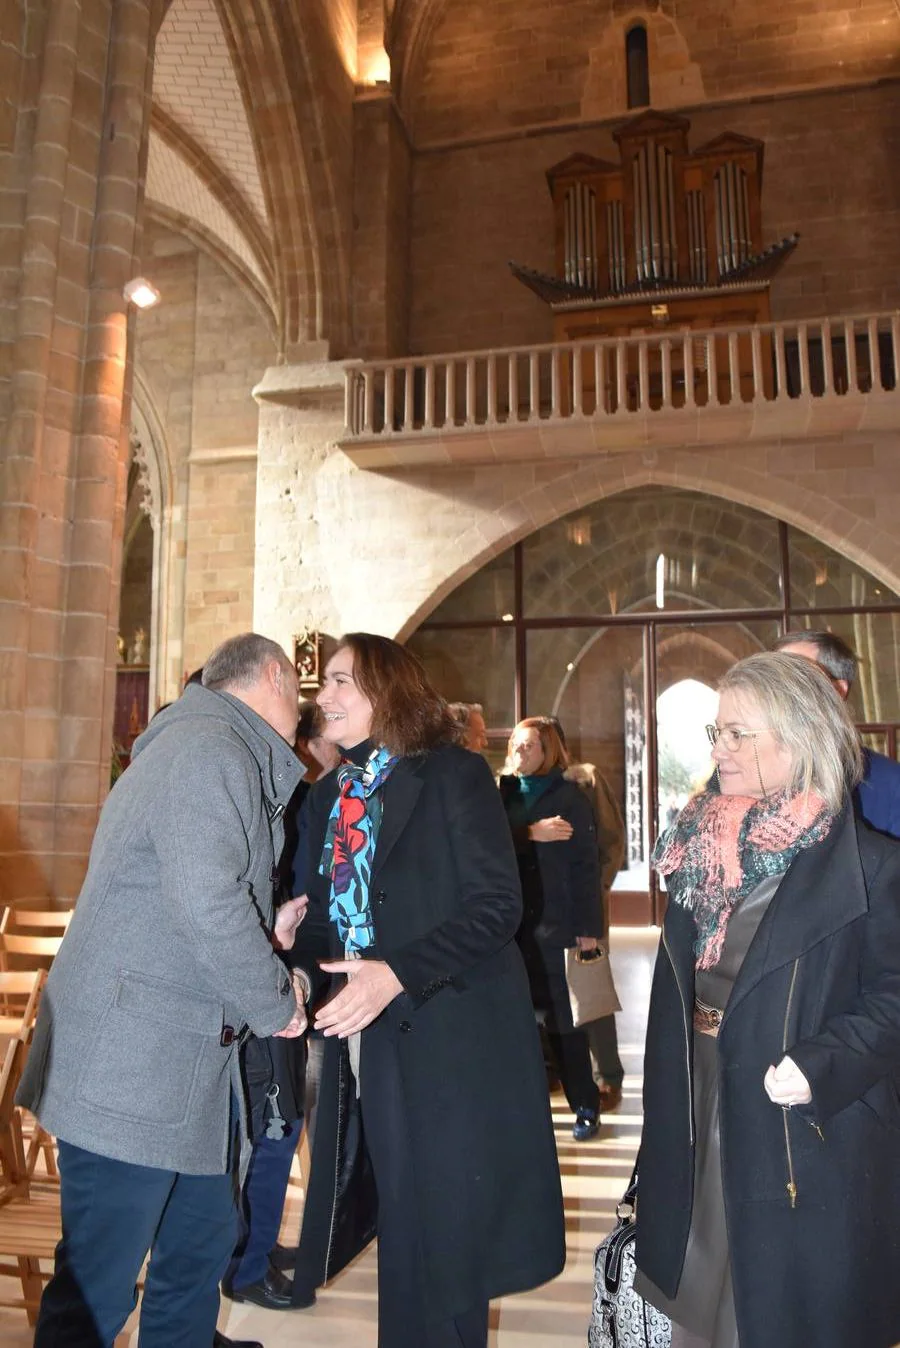 La Junta de Castilla y León ha concluido la restauración de las bóvedas y la cúpula de la torre de la Colegiata de San Miguel, con motivo de la próxima exposición que se celebrará en 2018